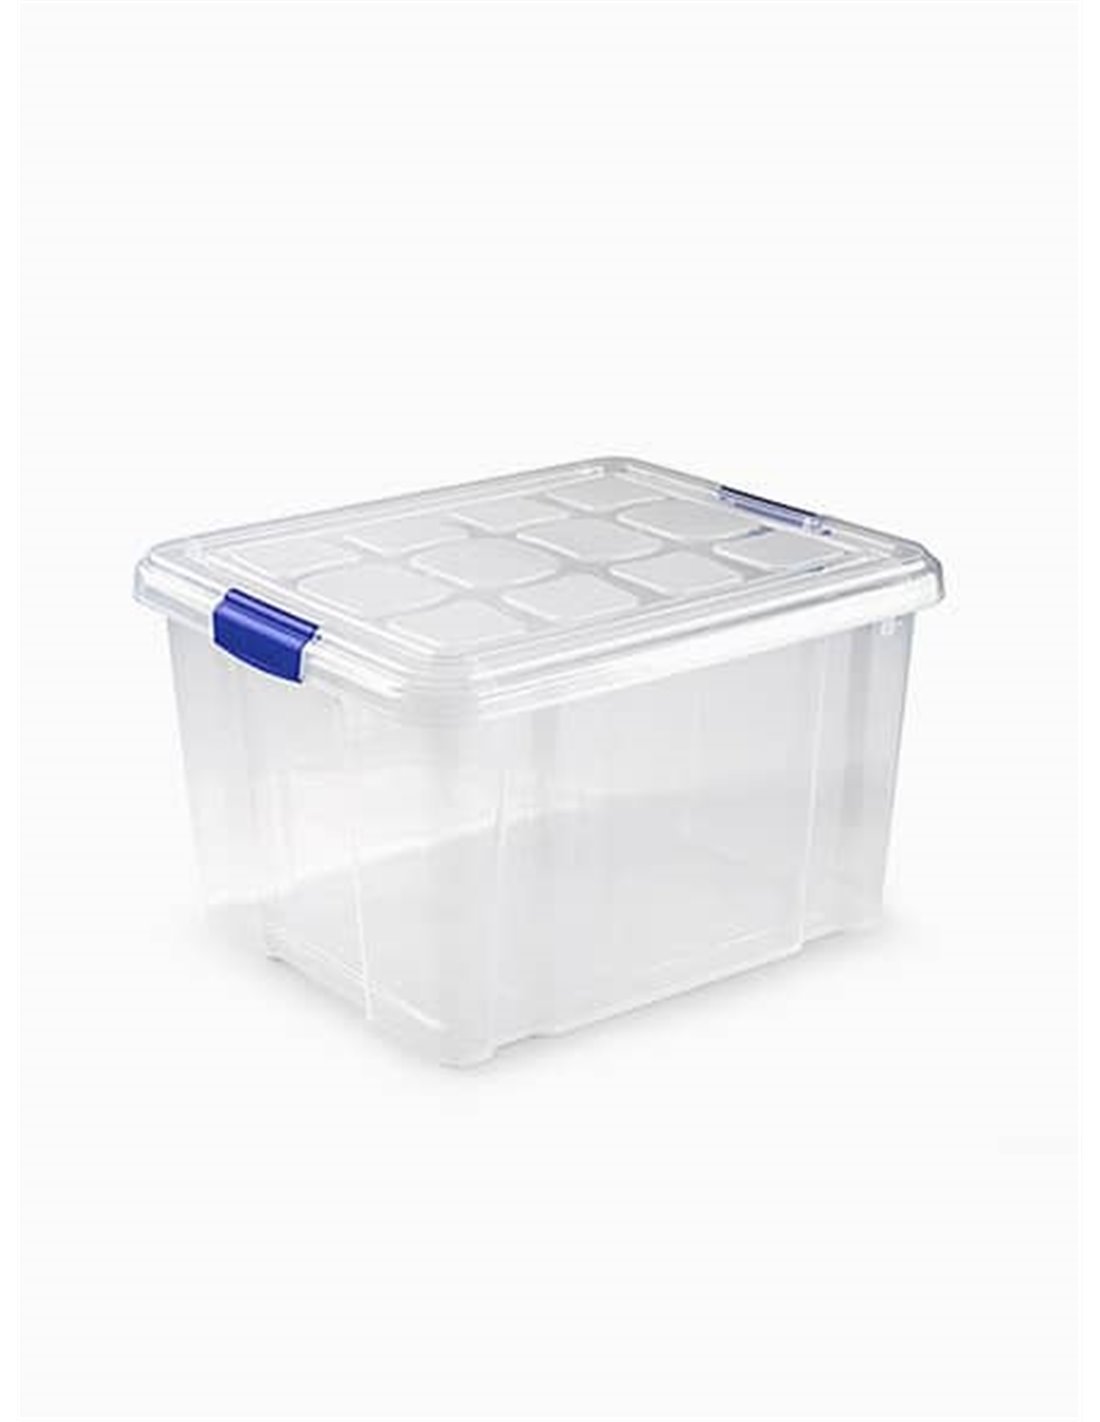 Caja de almacenaje plegable - ROSA - Kiabi - 4.00€